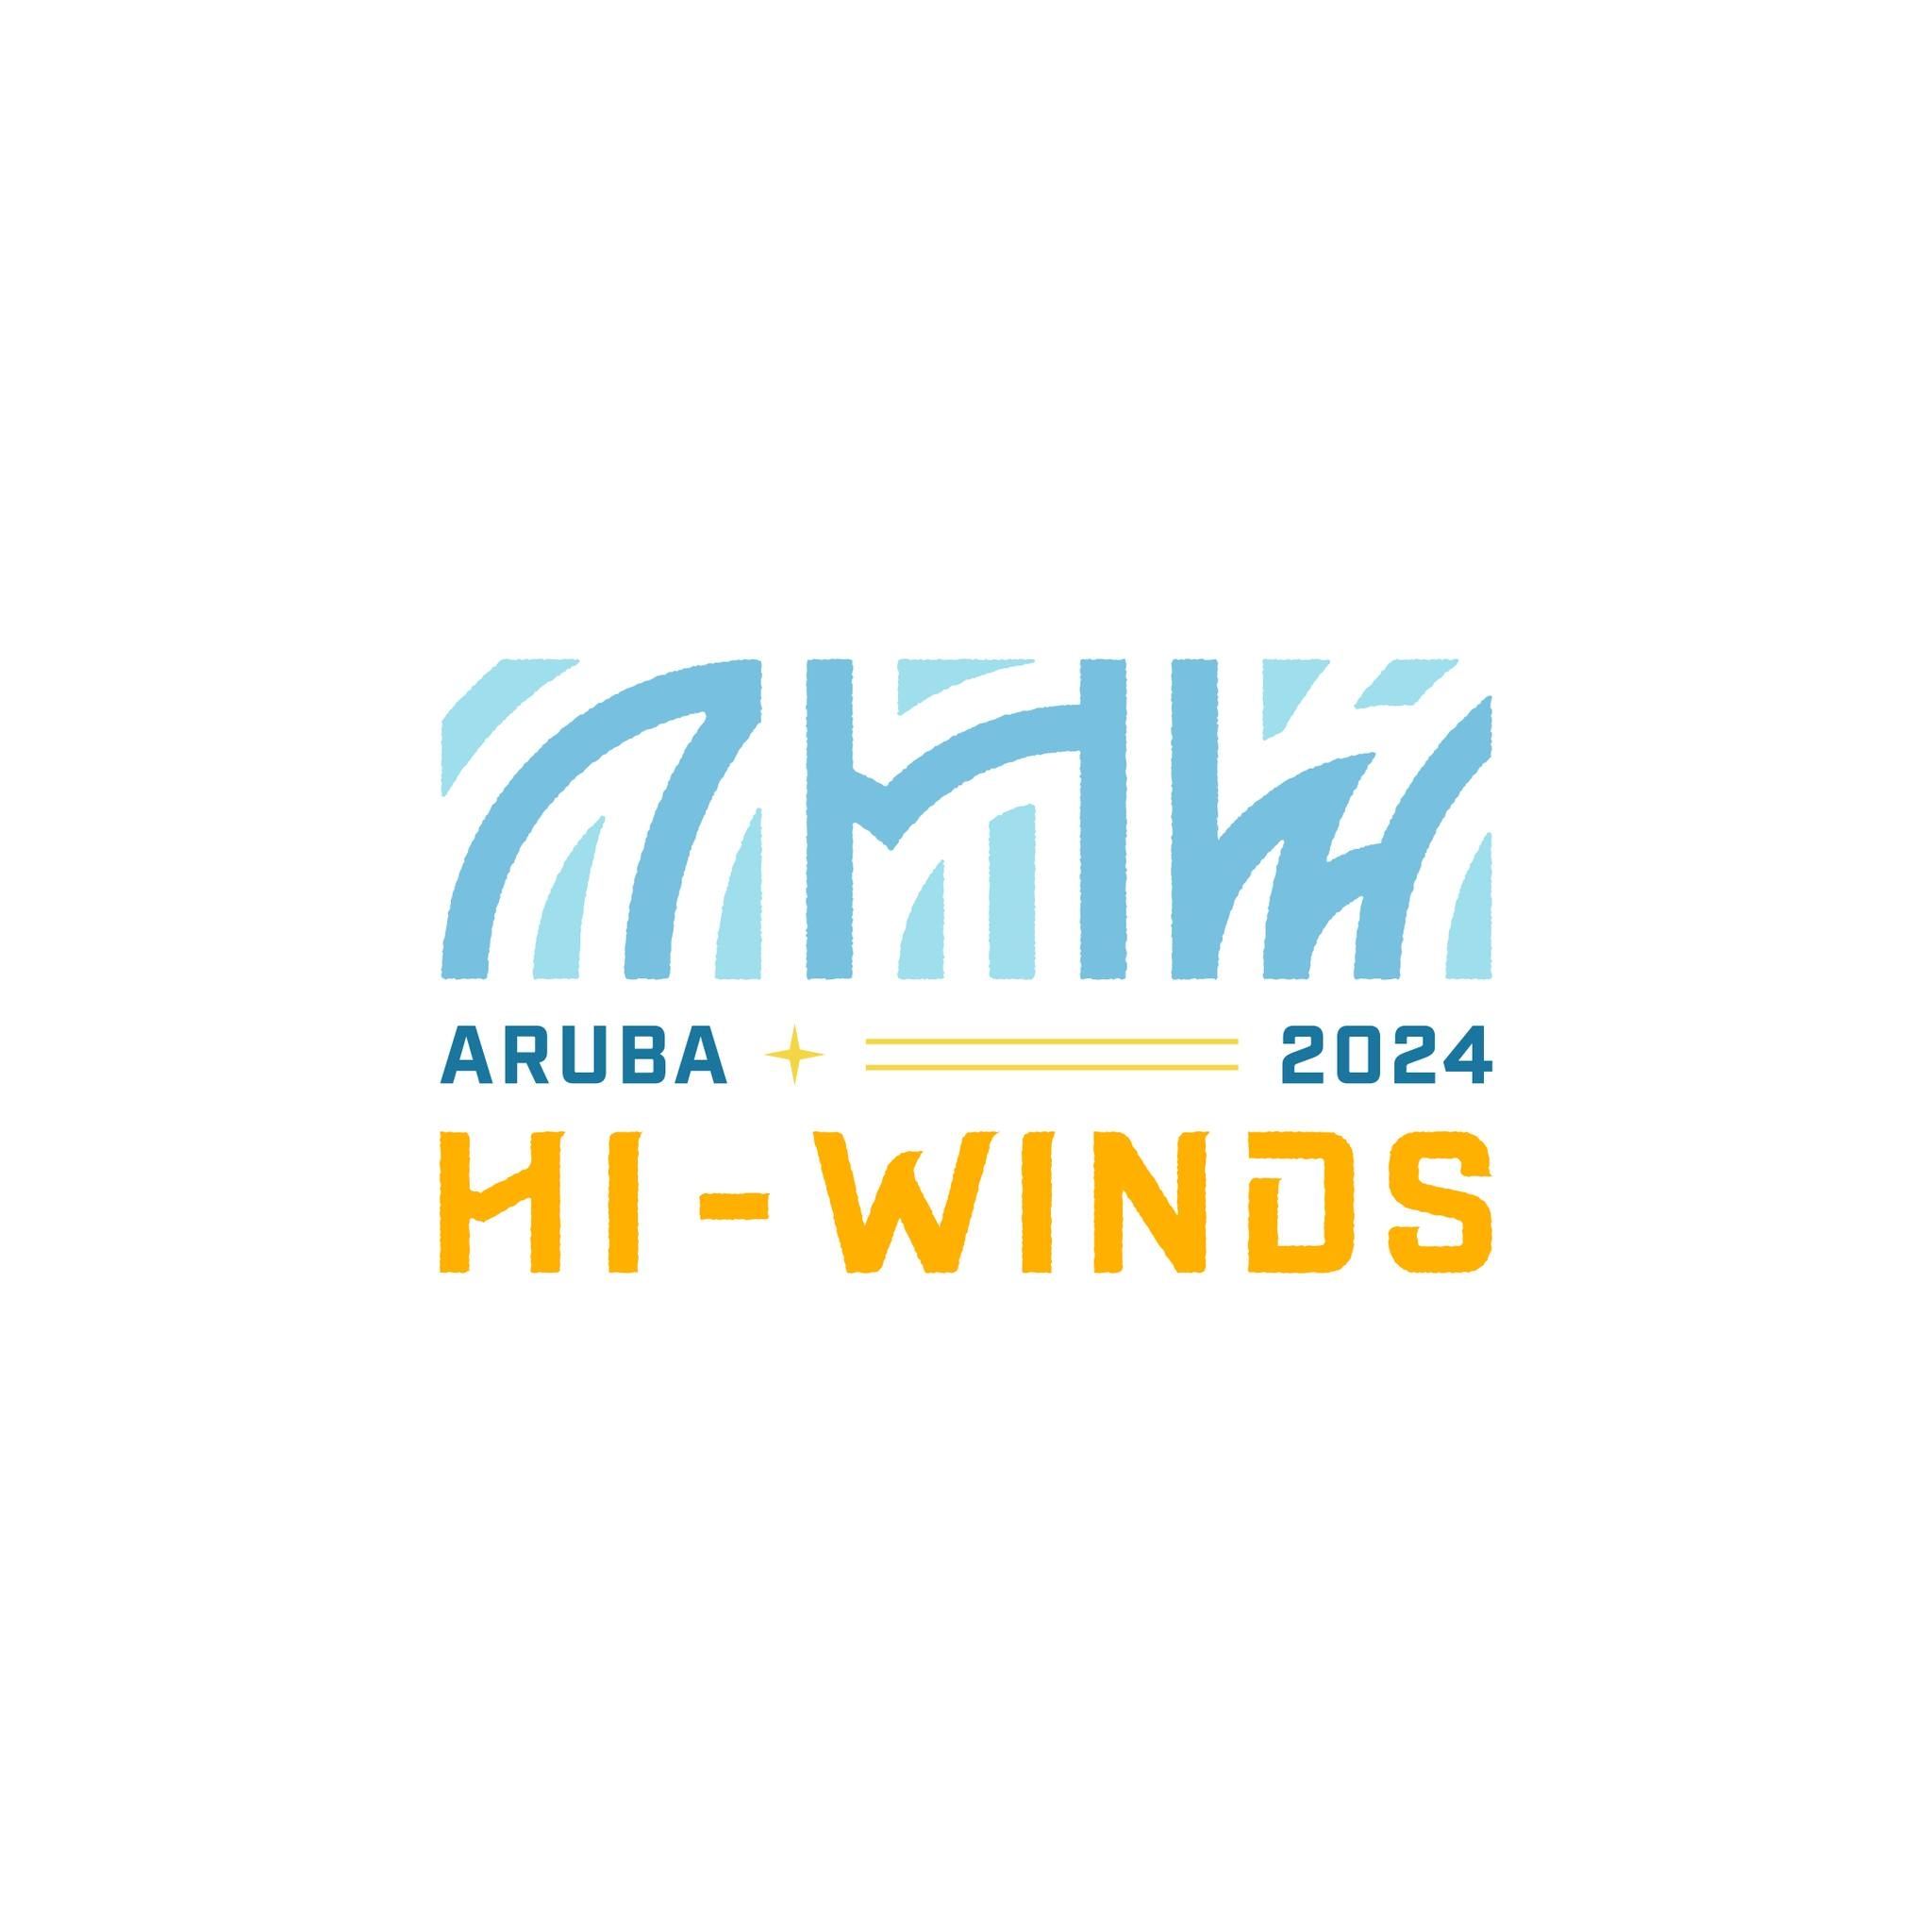 Aruba Hi-Winds 